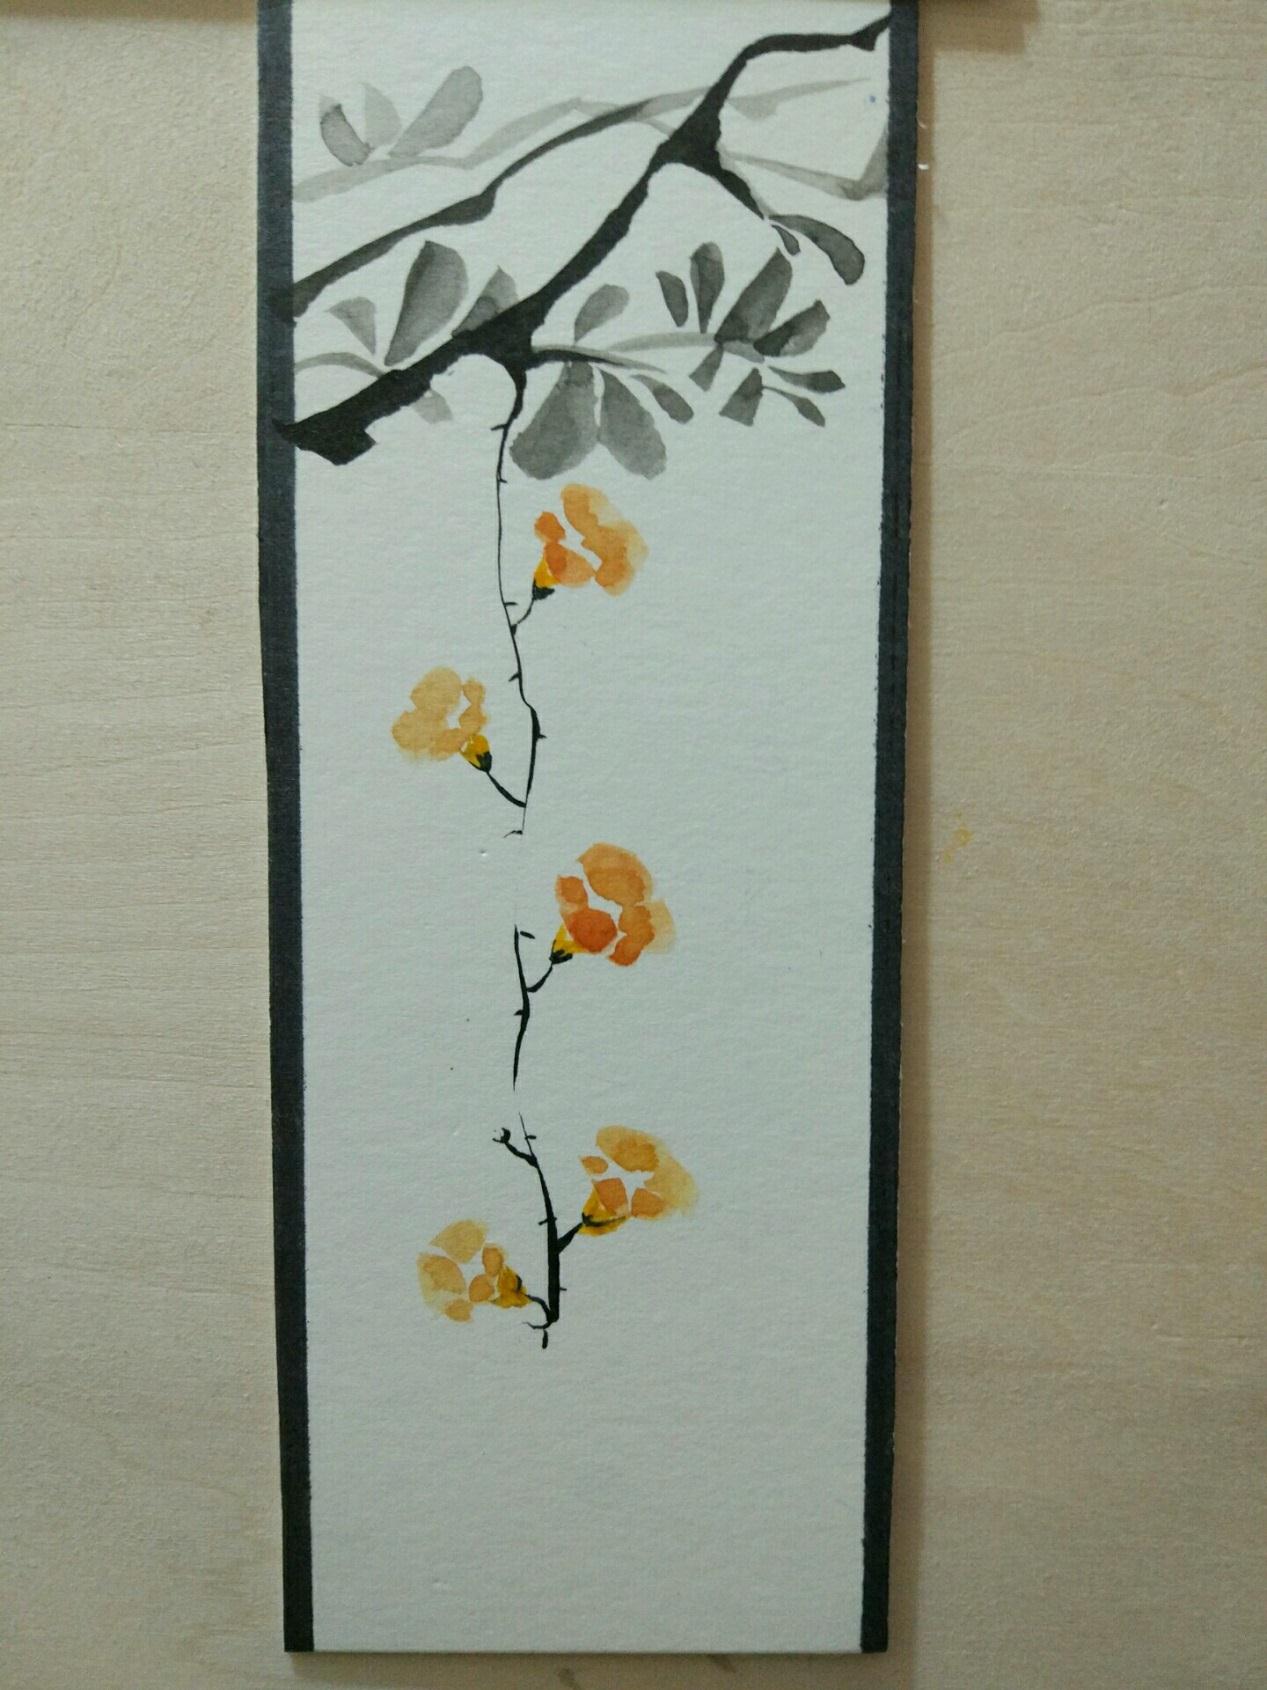  漂亮的花朵手绘书签制作过程 DIY原创手绘画